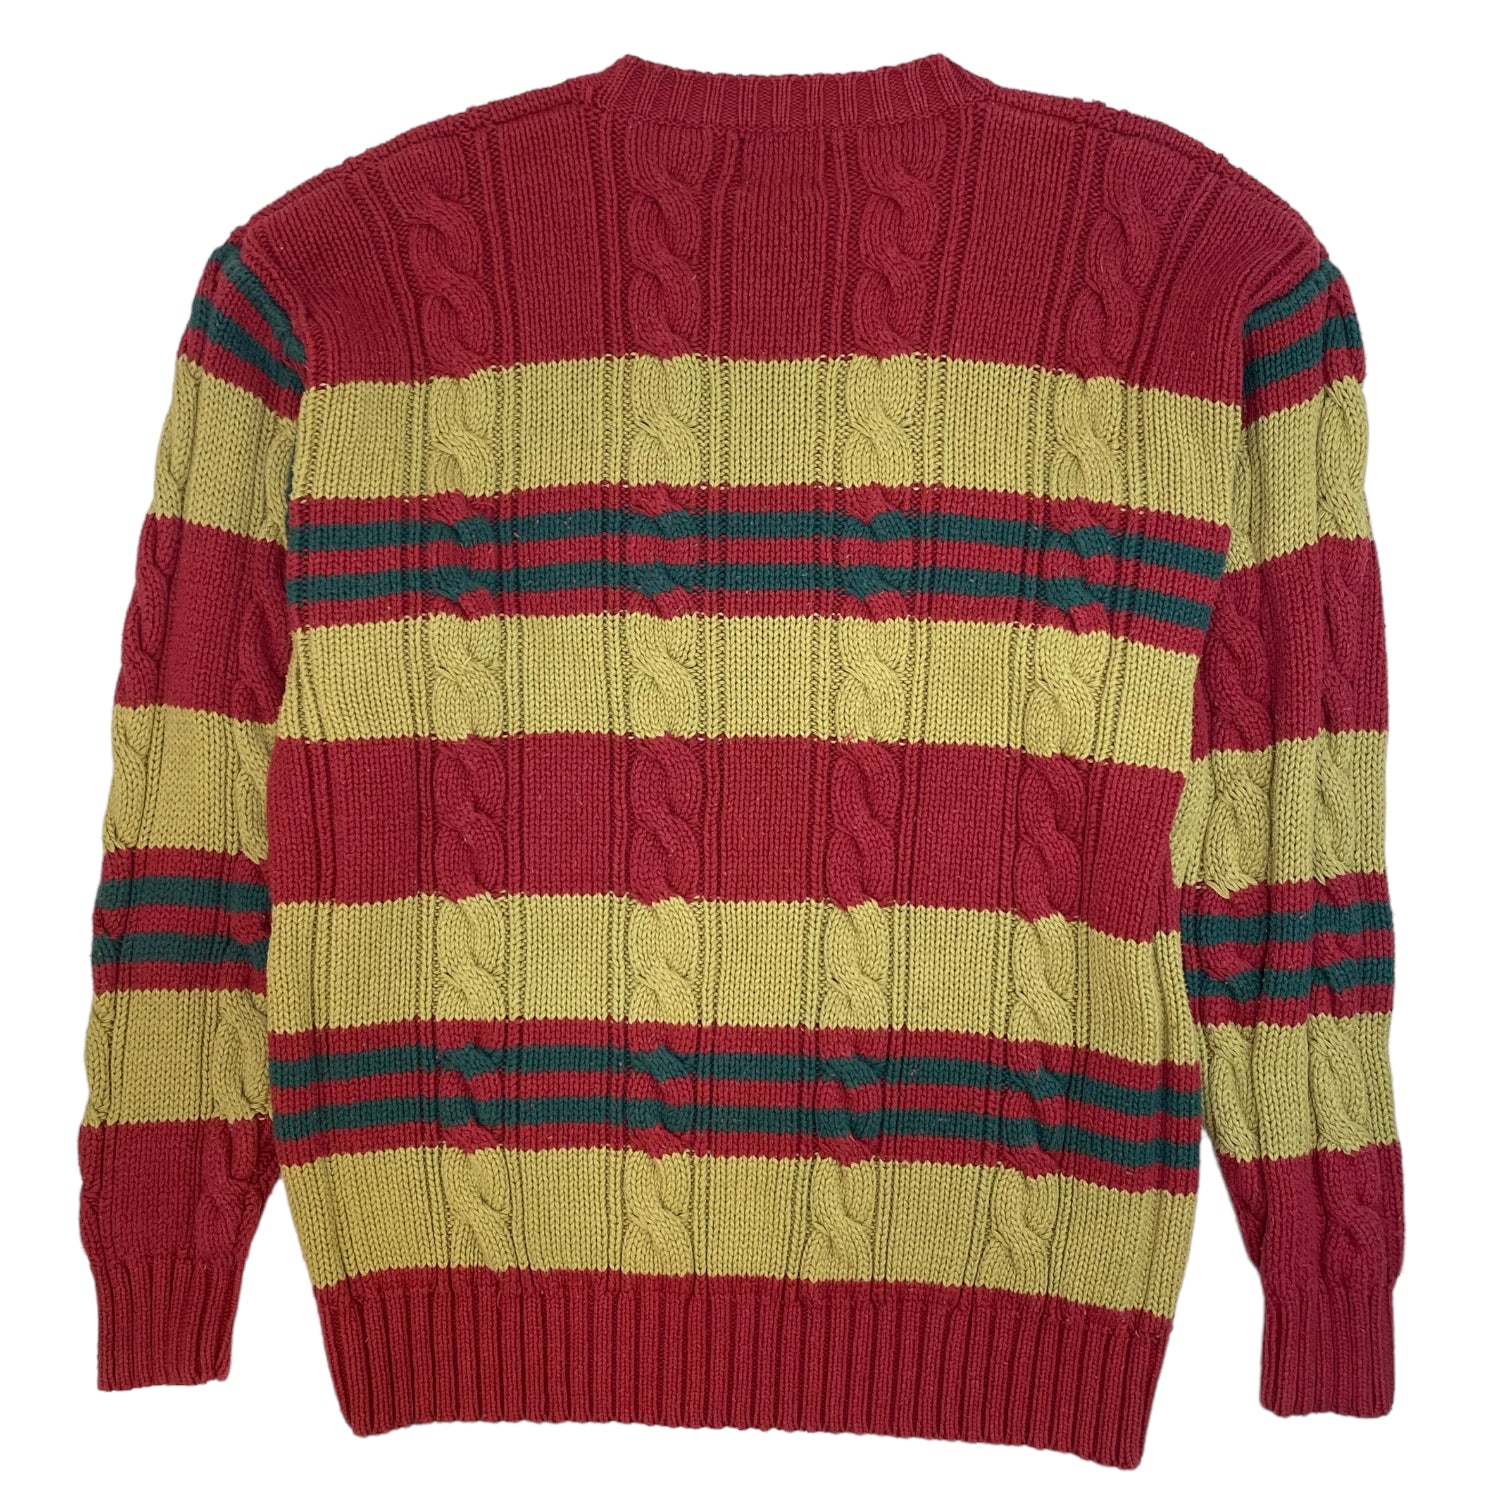 Vintage Gap Striped Knit Sweater